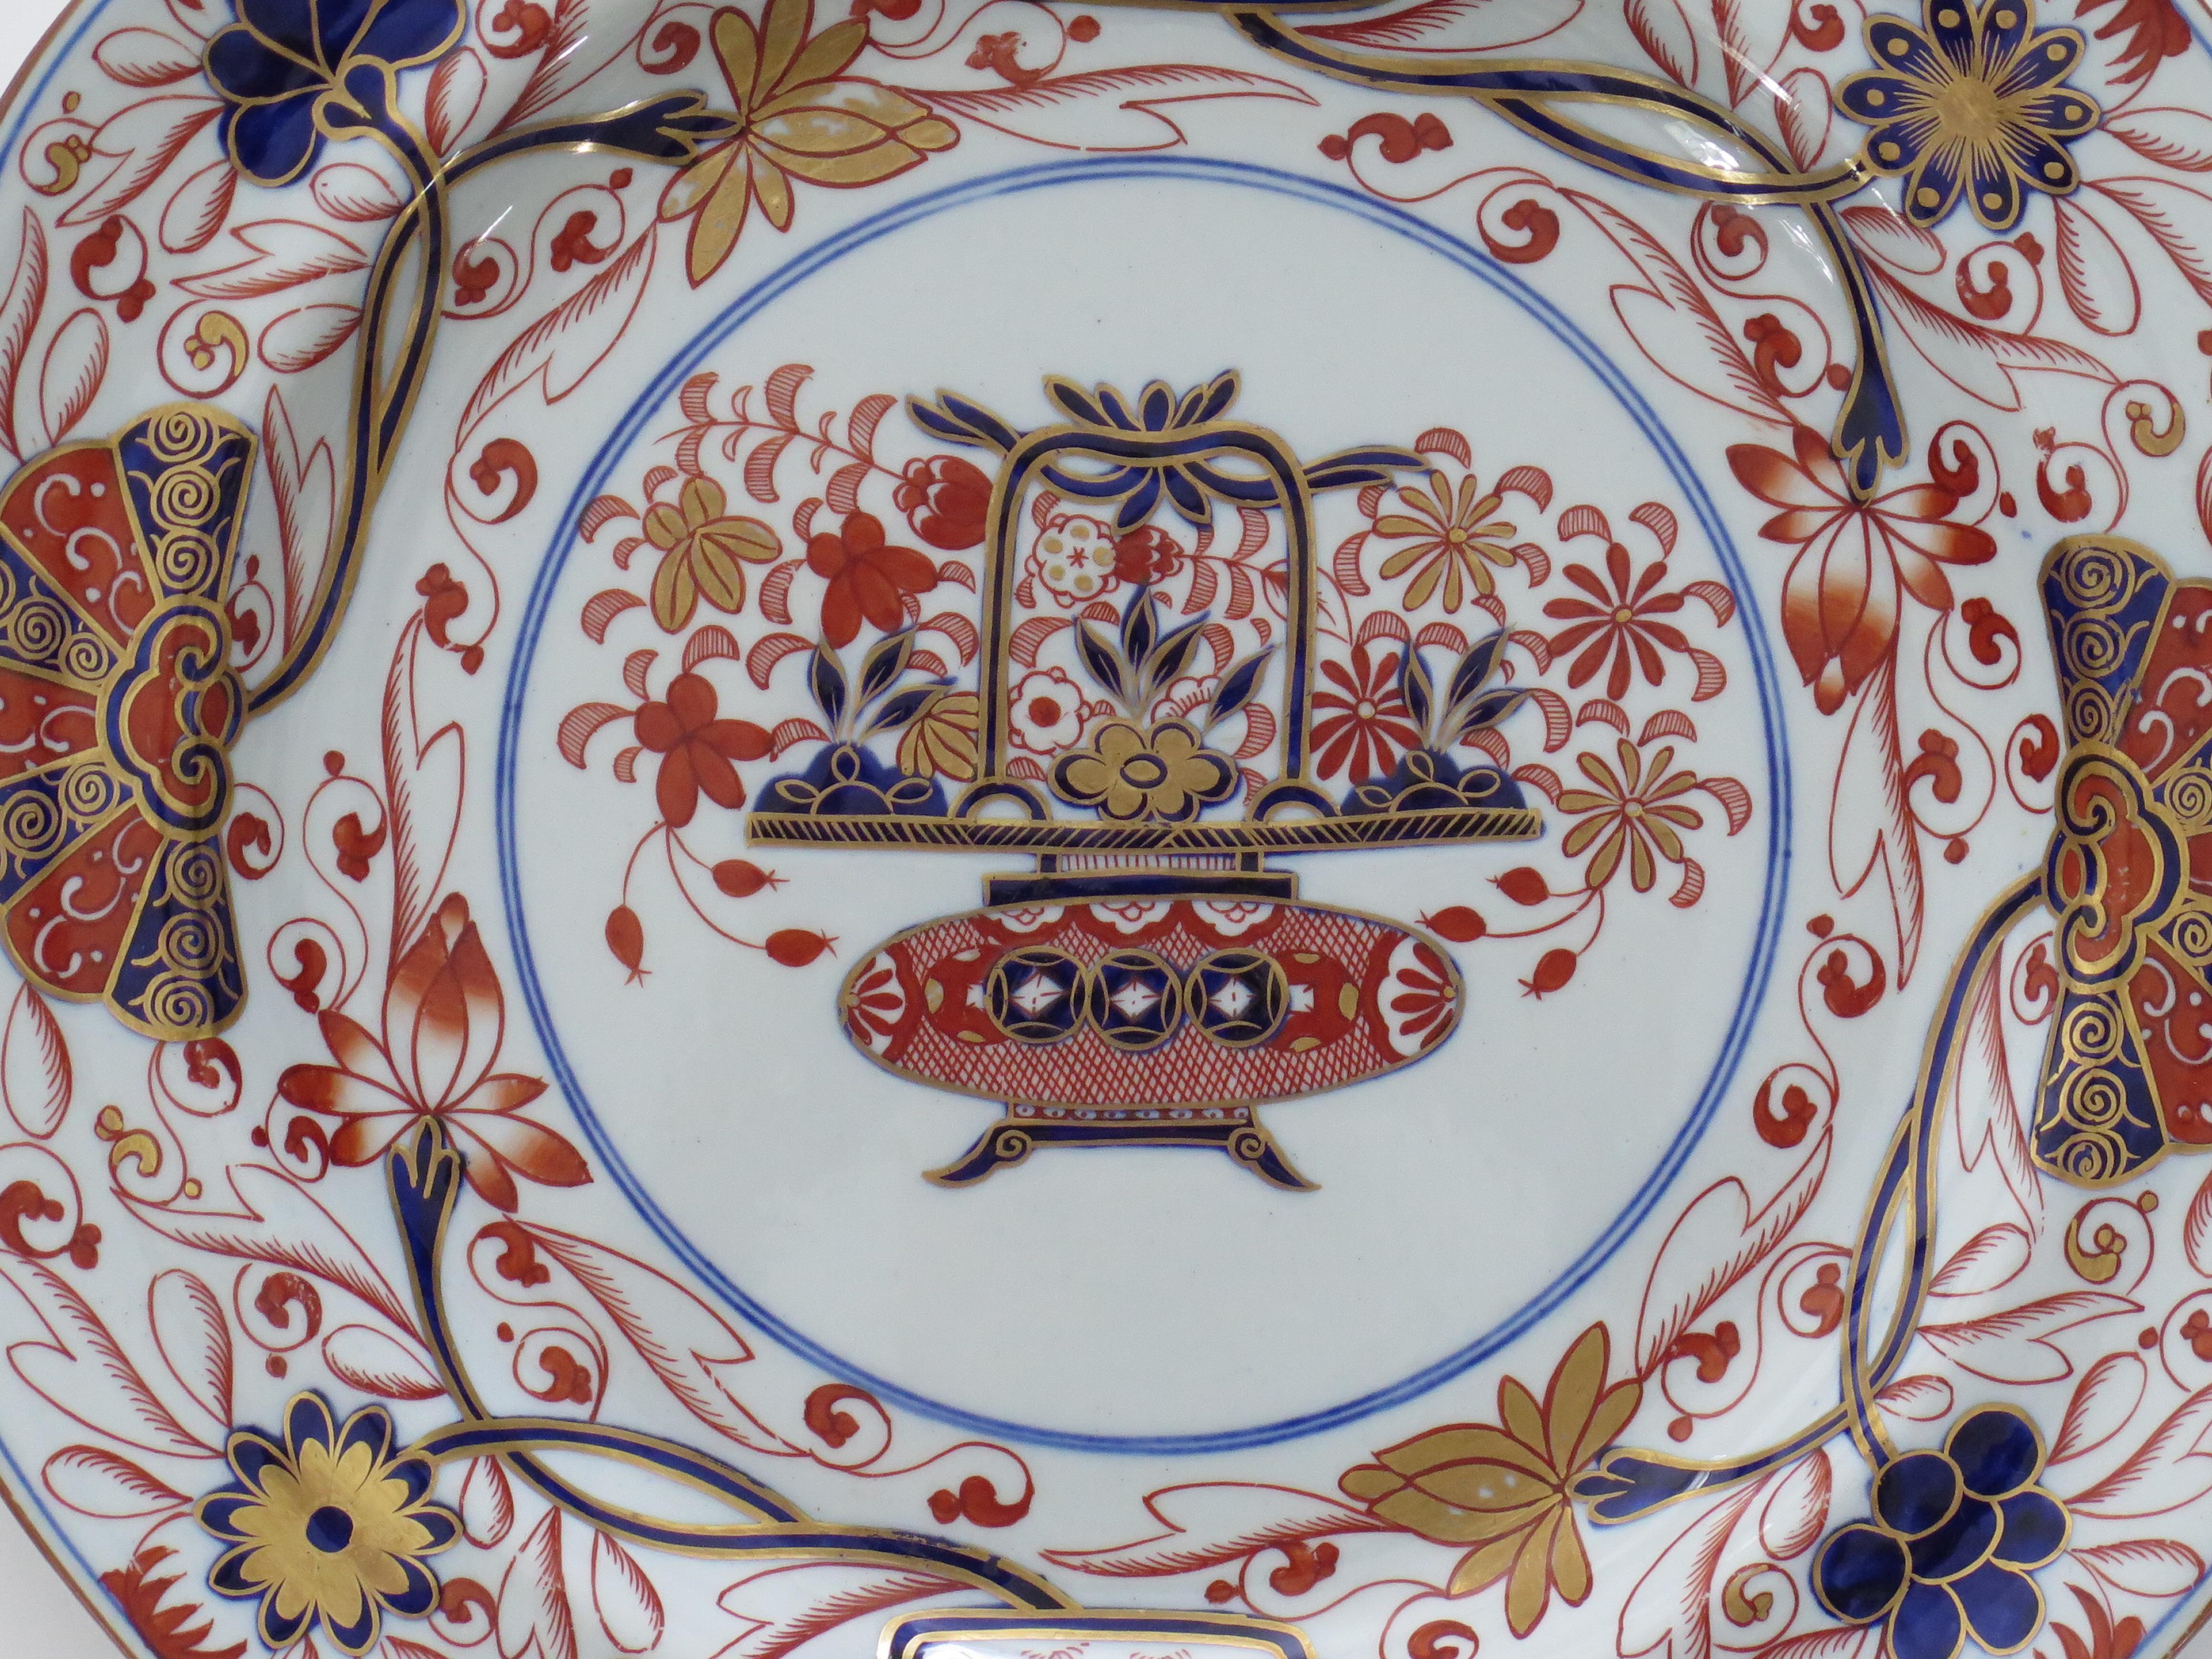 Il s'agit d'une très belle assiette à dîner peinte à la main, produite par l'usine Spode à la fin de la période géorgienne, vers 1820.

Il s'agit du modèle numéro 2283, la décoration chinoise étant soigneusement et magnifiquement peinte à la main